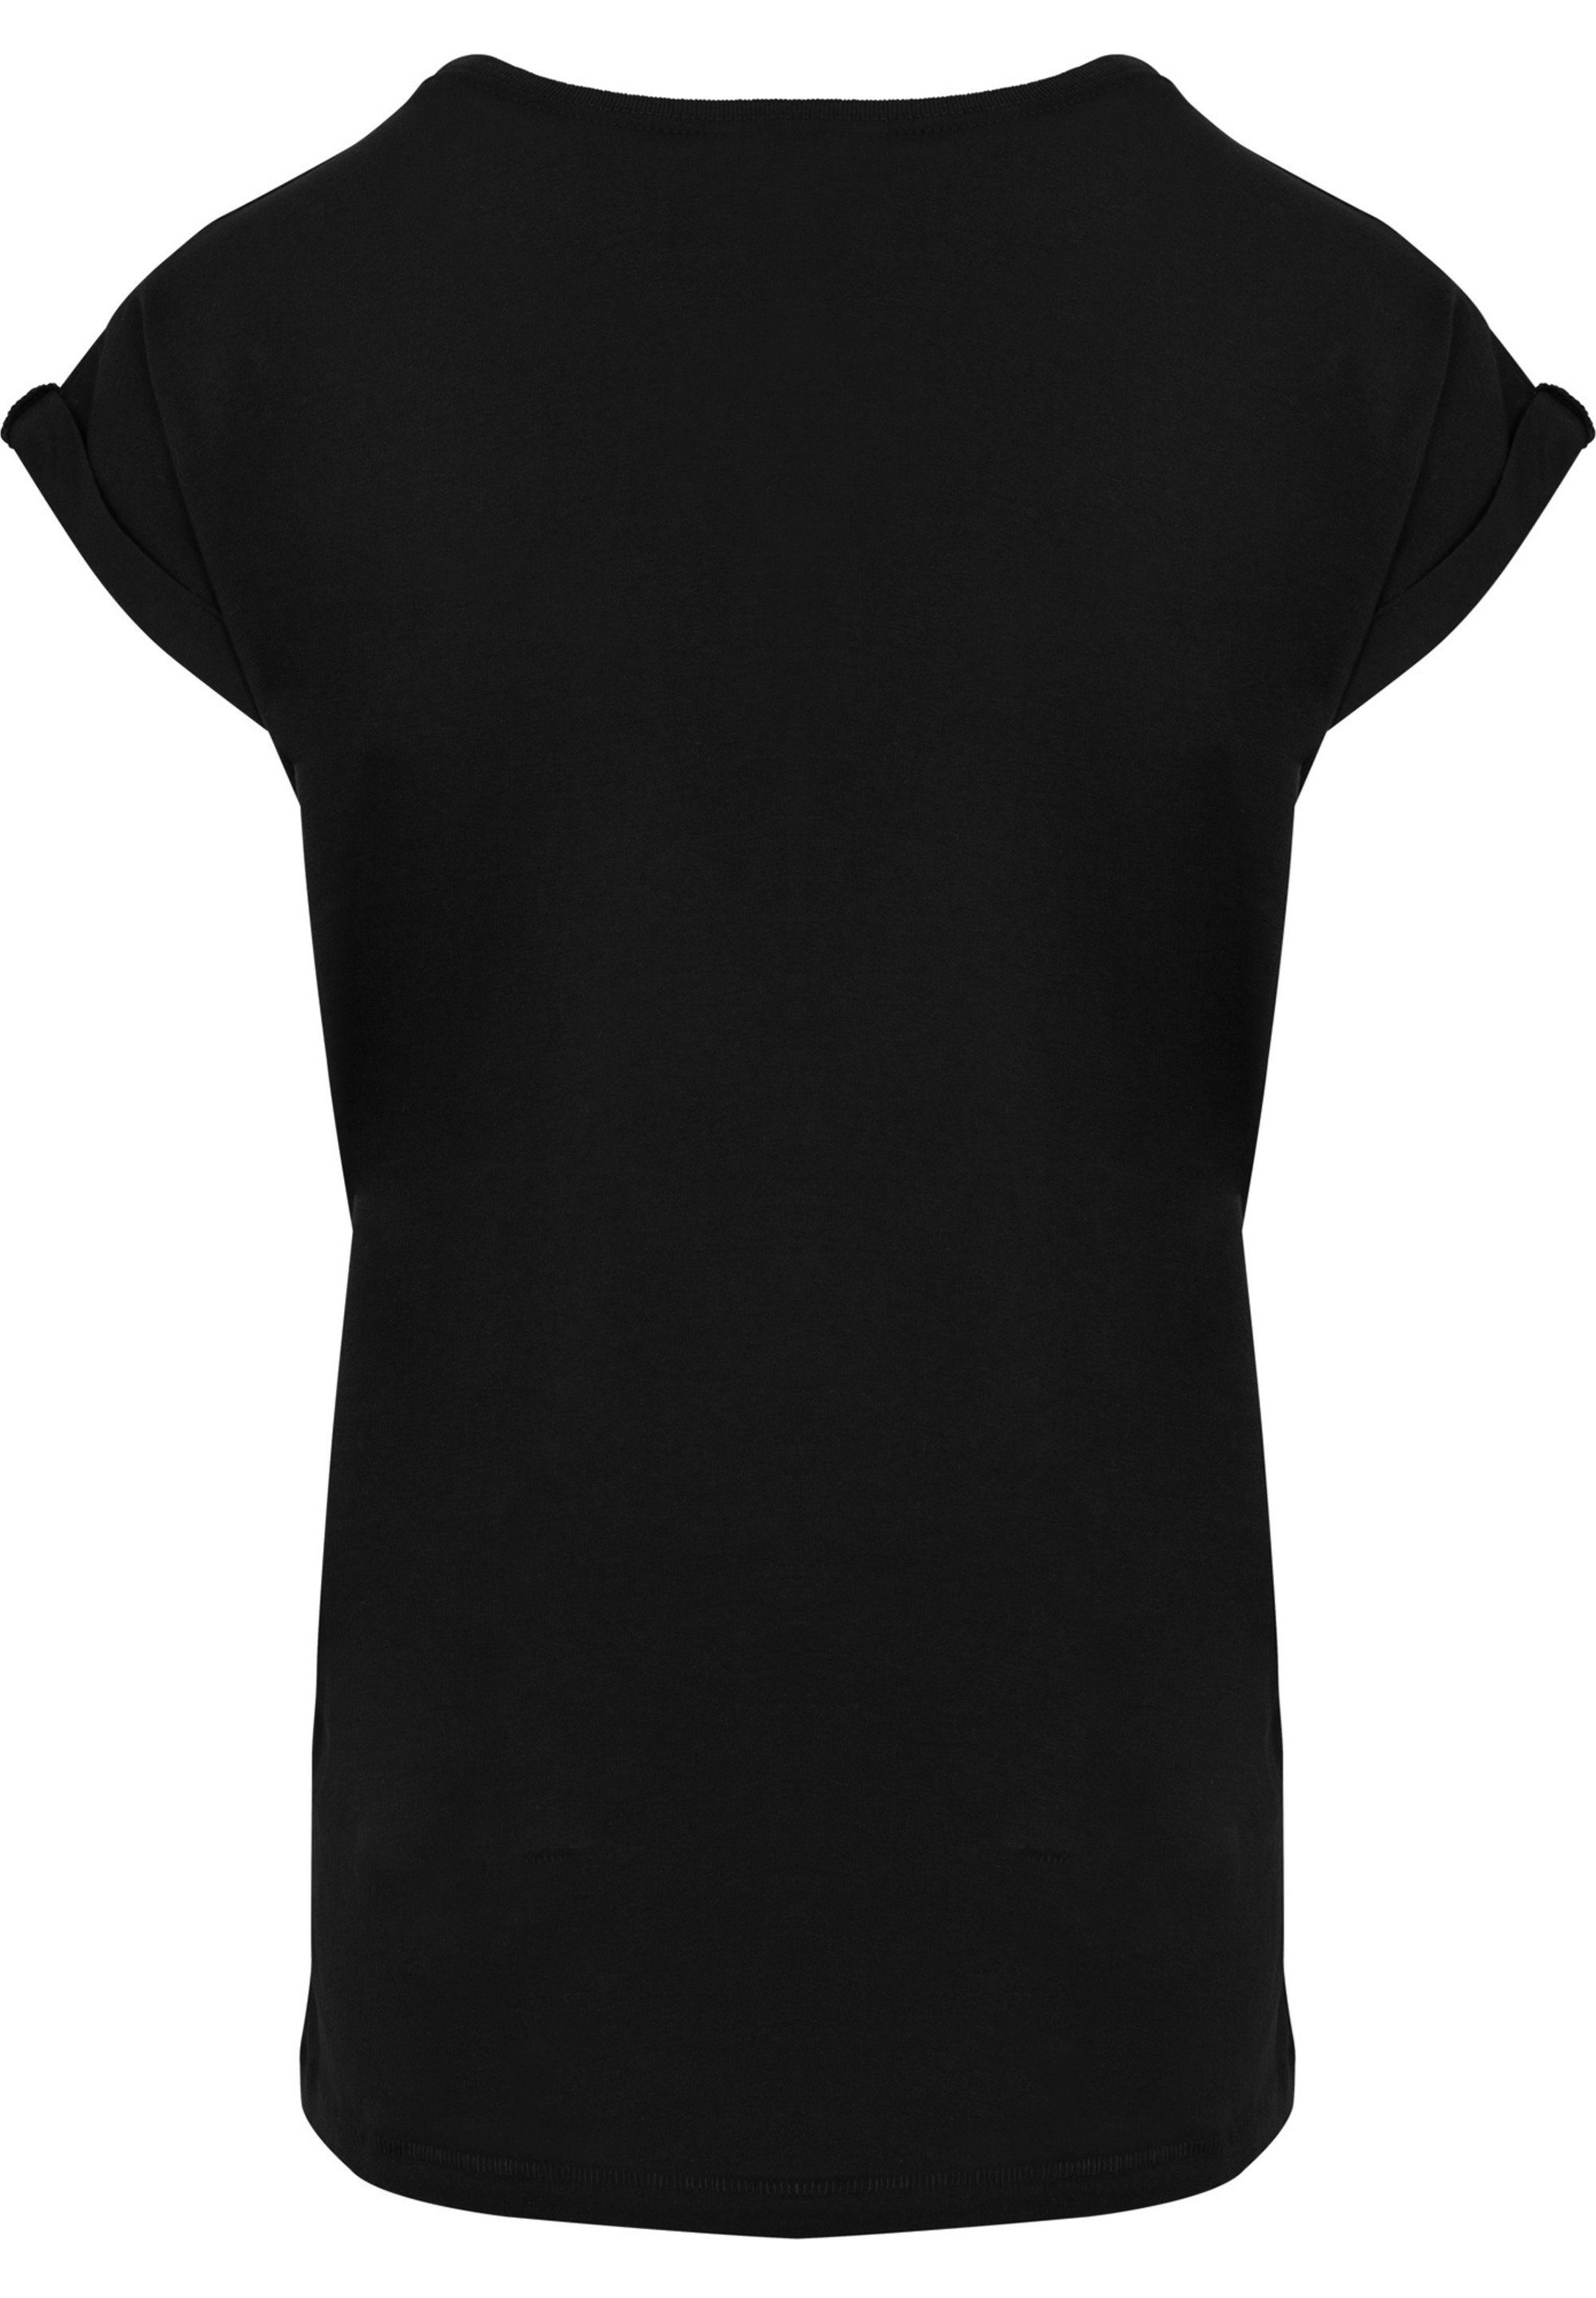 T-Shirt Ärmel,Bedruckt F4NT4STIC Damen,Premium T-Shirt F4NT4STIC Merch,Regular-Fit,Kurze